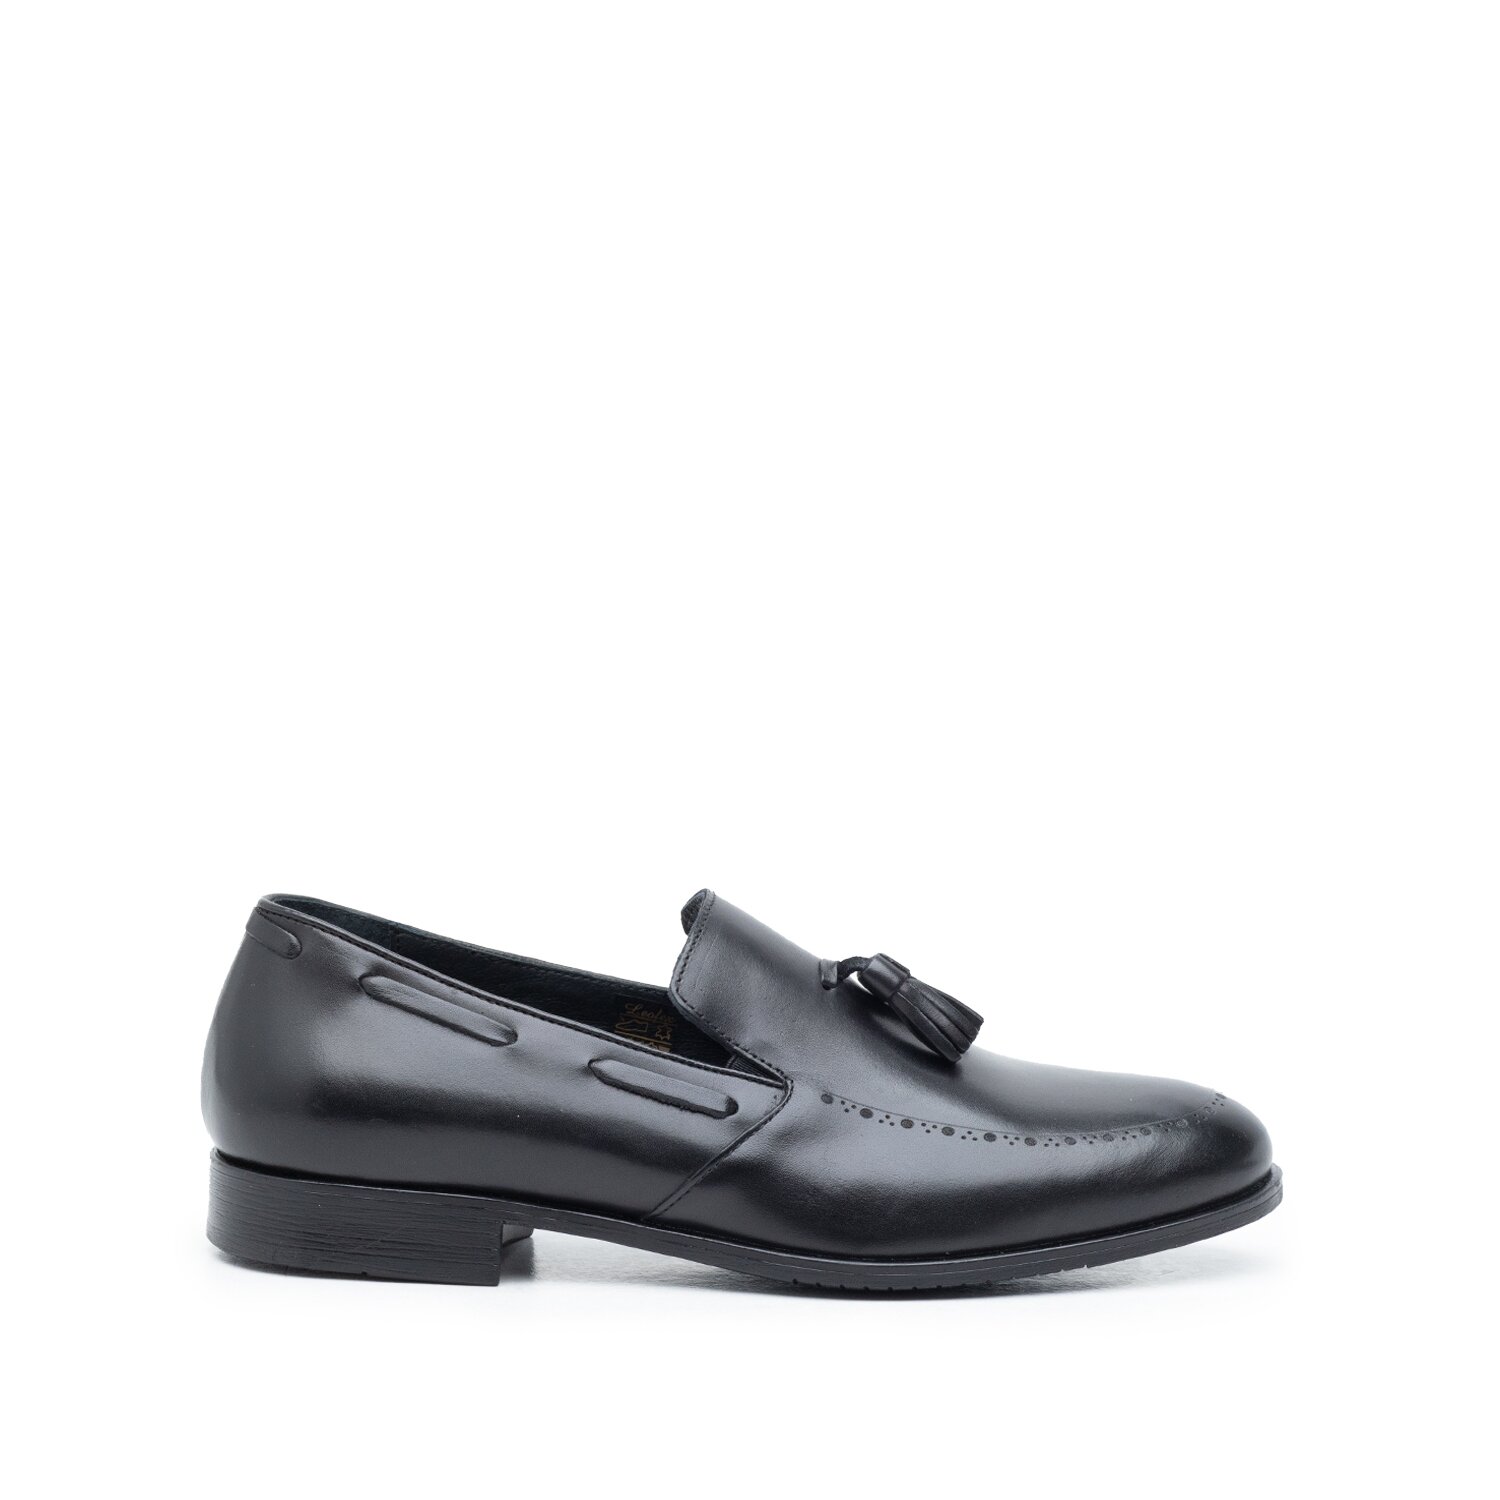 Pantofi barbati eleganti din piele naturala cu ciucuri, Leofex -515 Negru Box